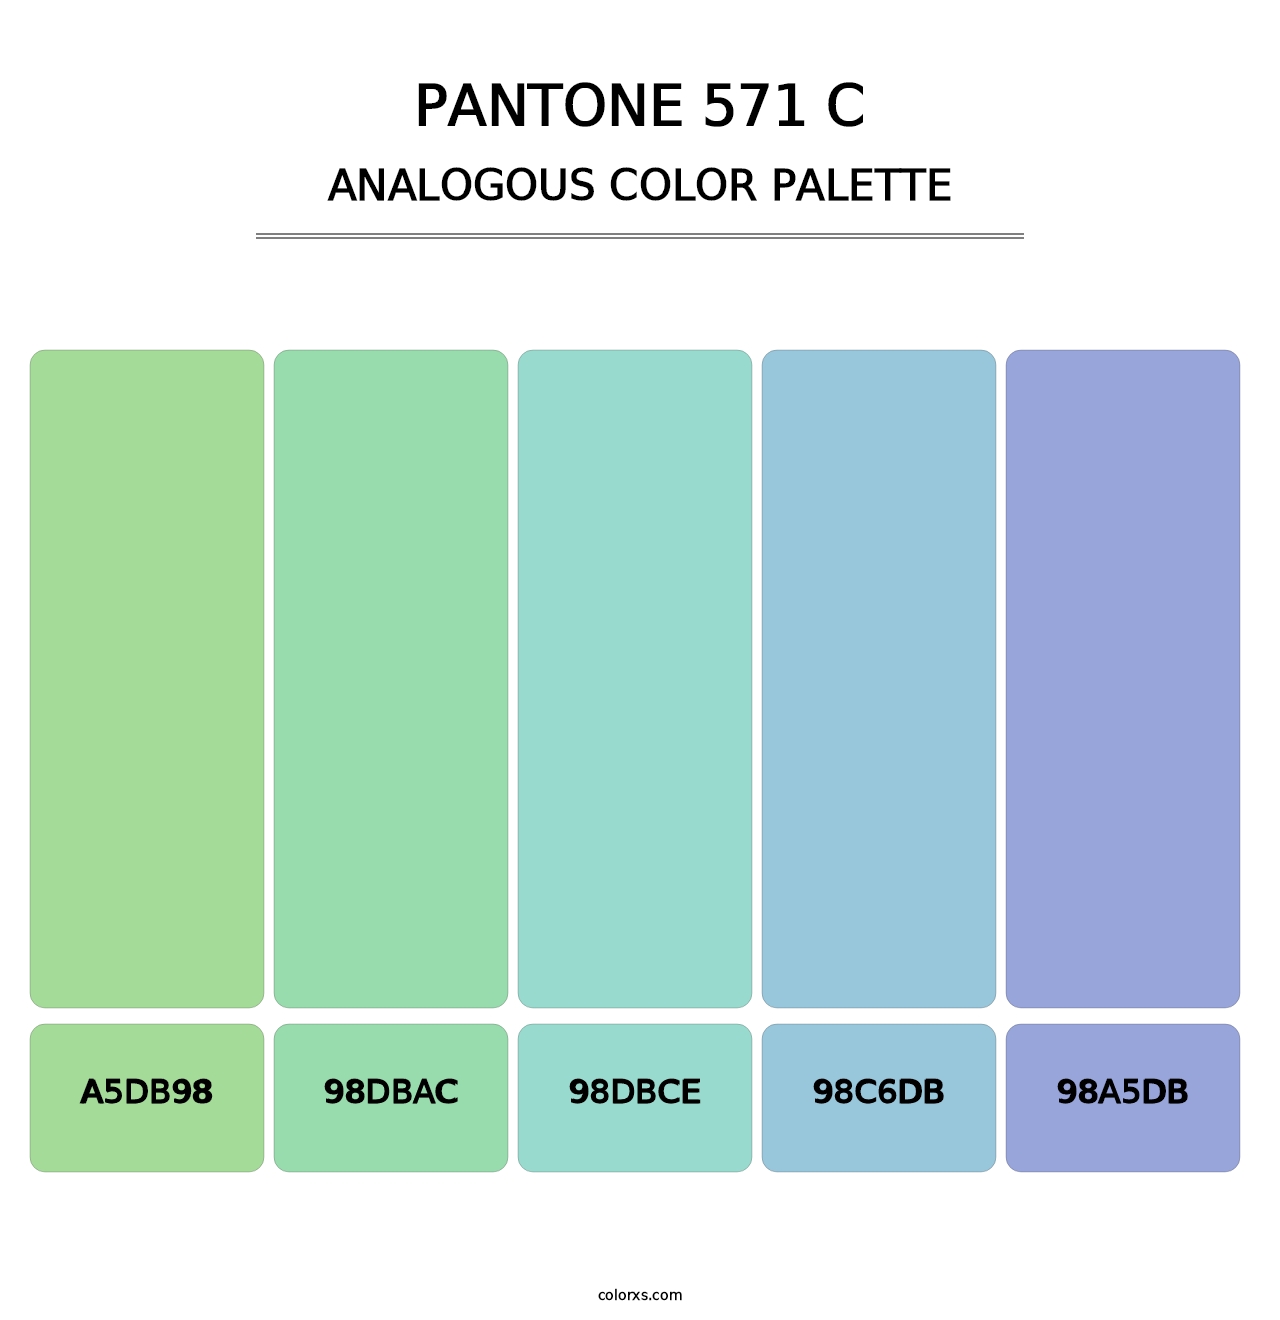 PANTONE 571 C - Analogous Color Palette